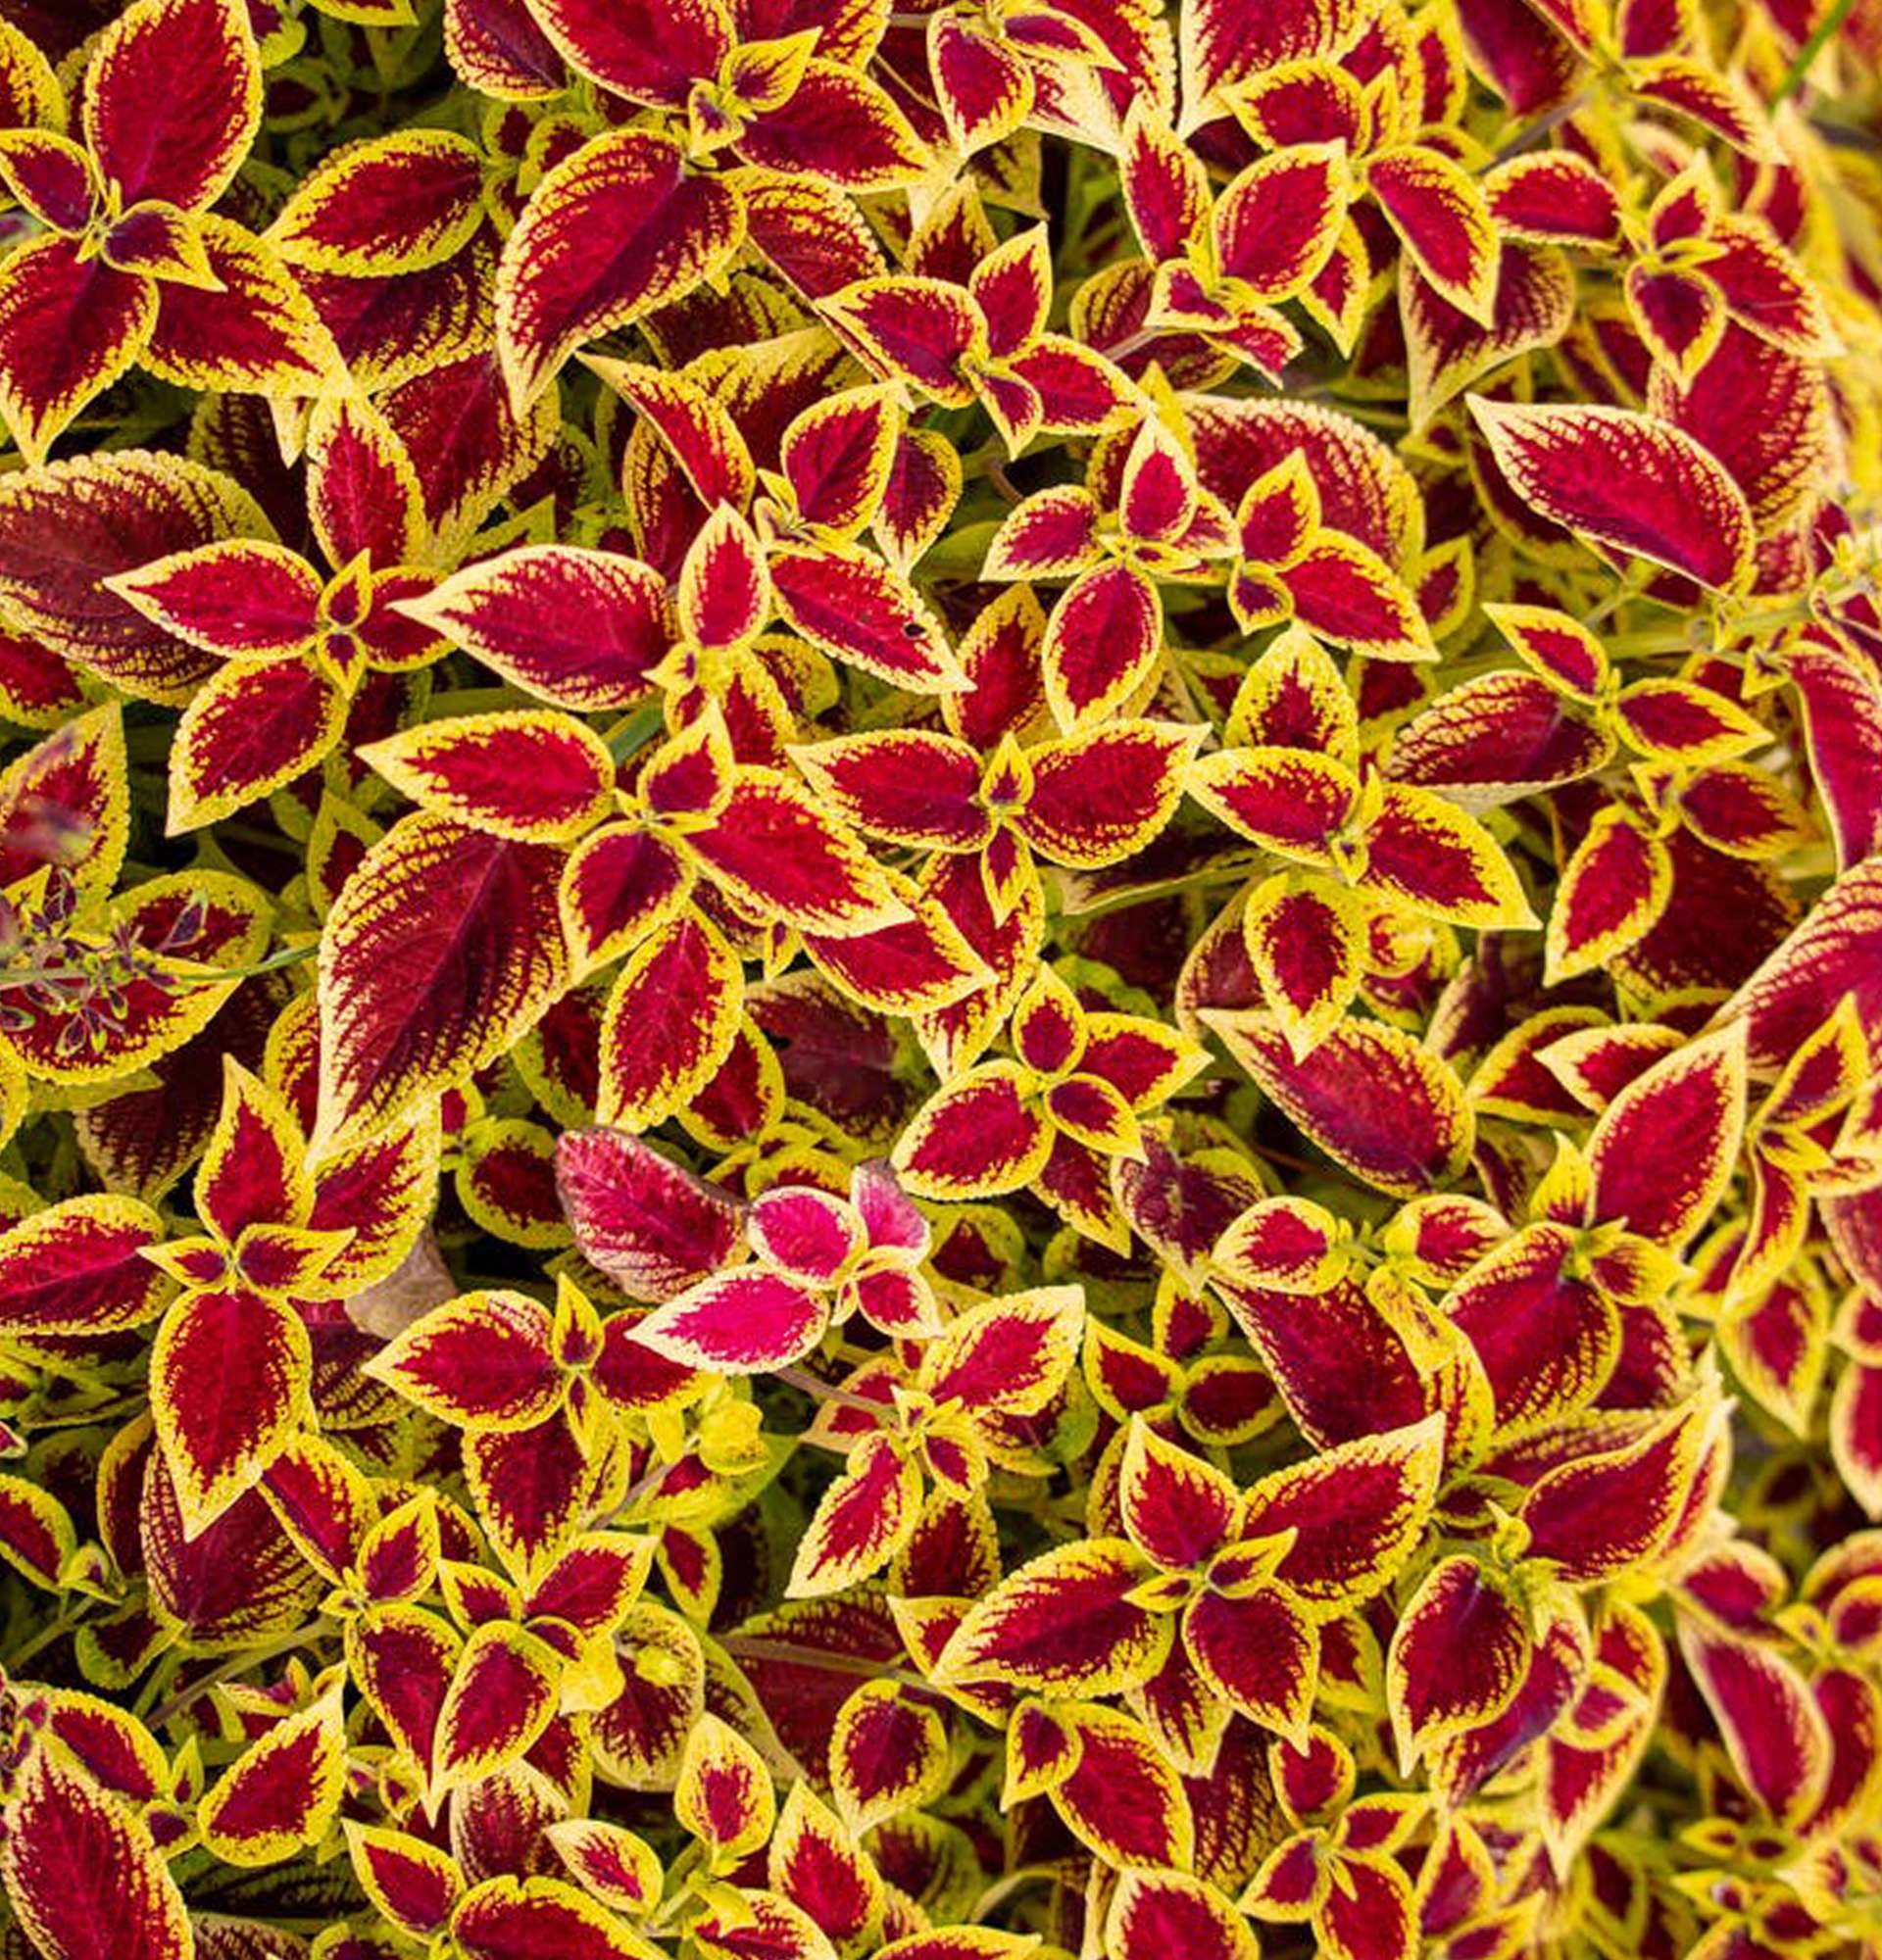 Blumentopf Coleus Foto - Strauch zu Hause